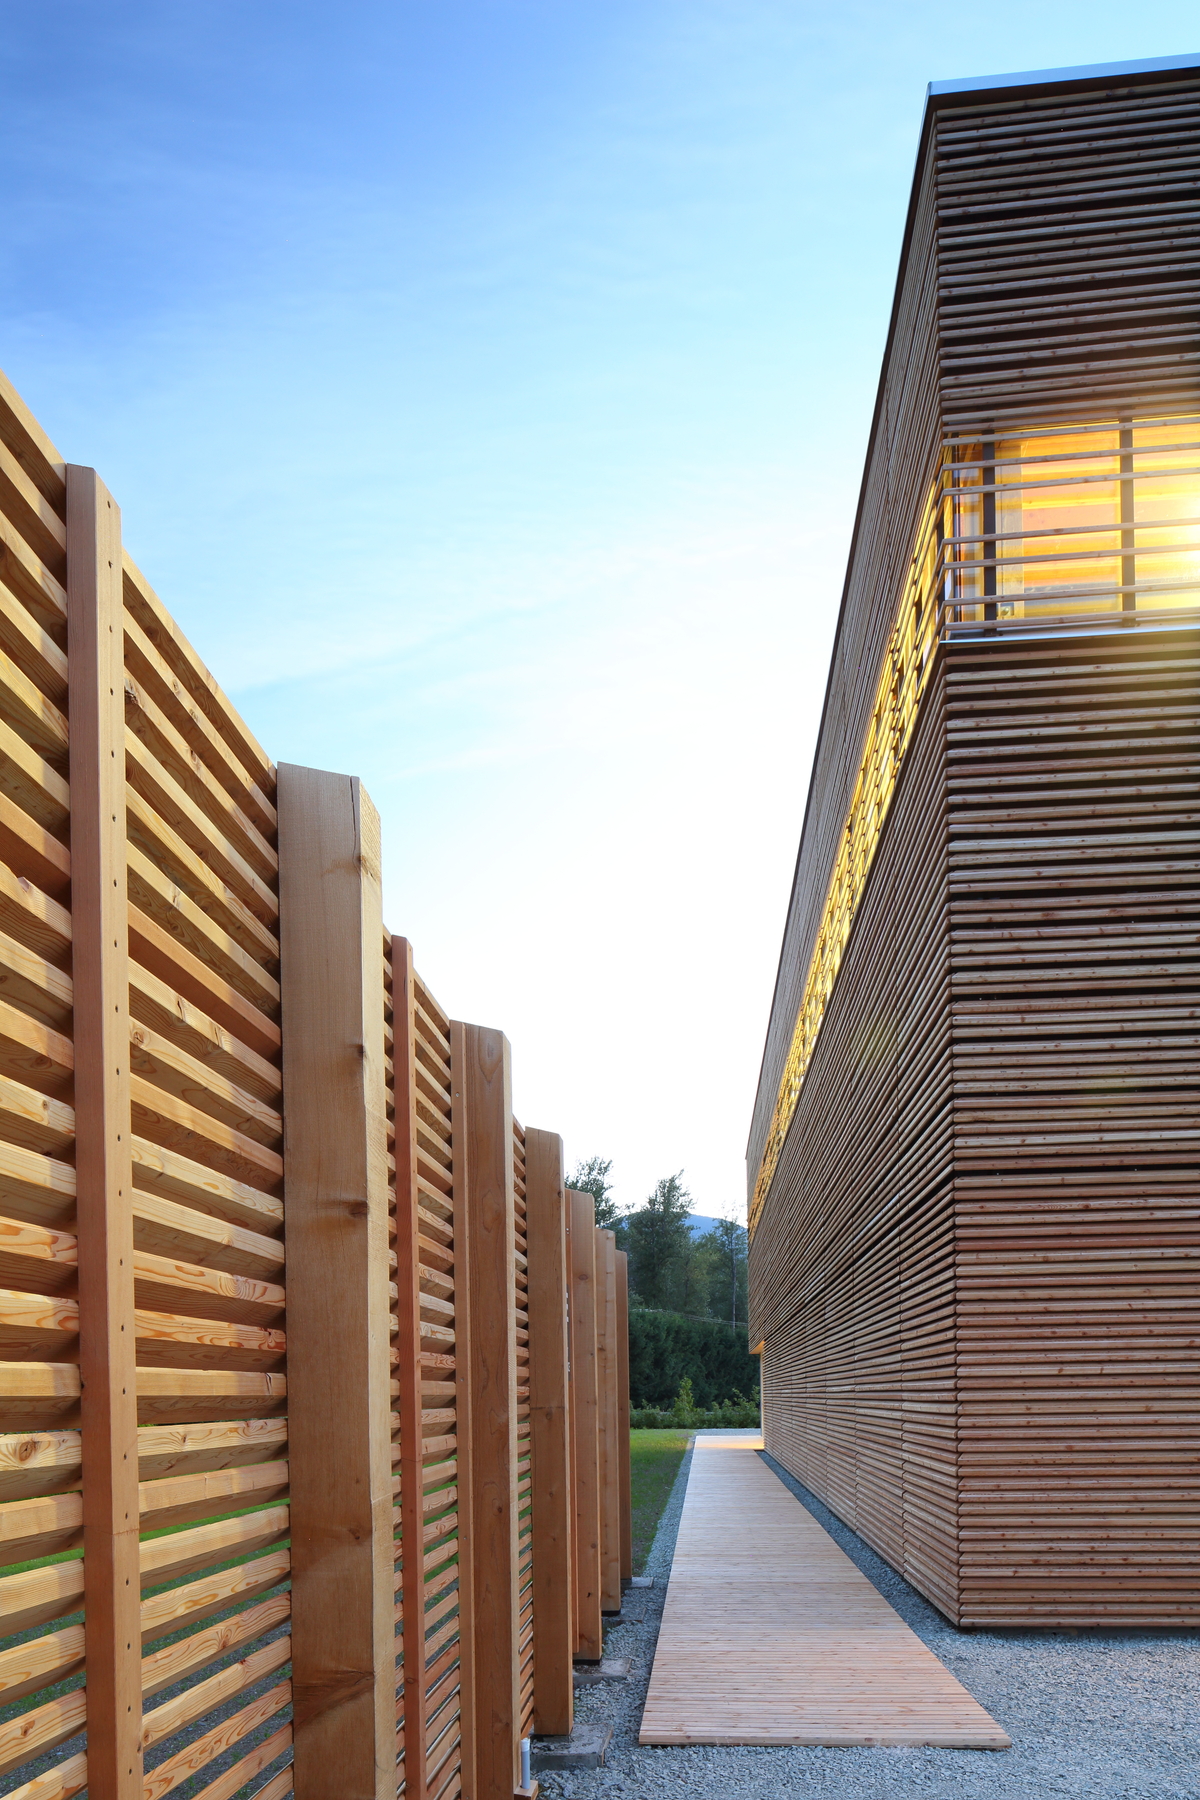 BC被动式房屋工厂的下午外部景观，这是一座低矮的被动式房屋结构，由轻质框架和大量木材构件建造，展示了围绕外部木条、木制走道和装饰性木栅栏的包裹